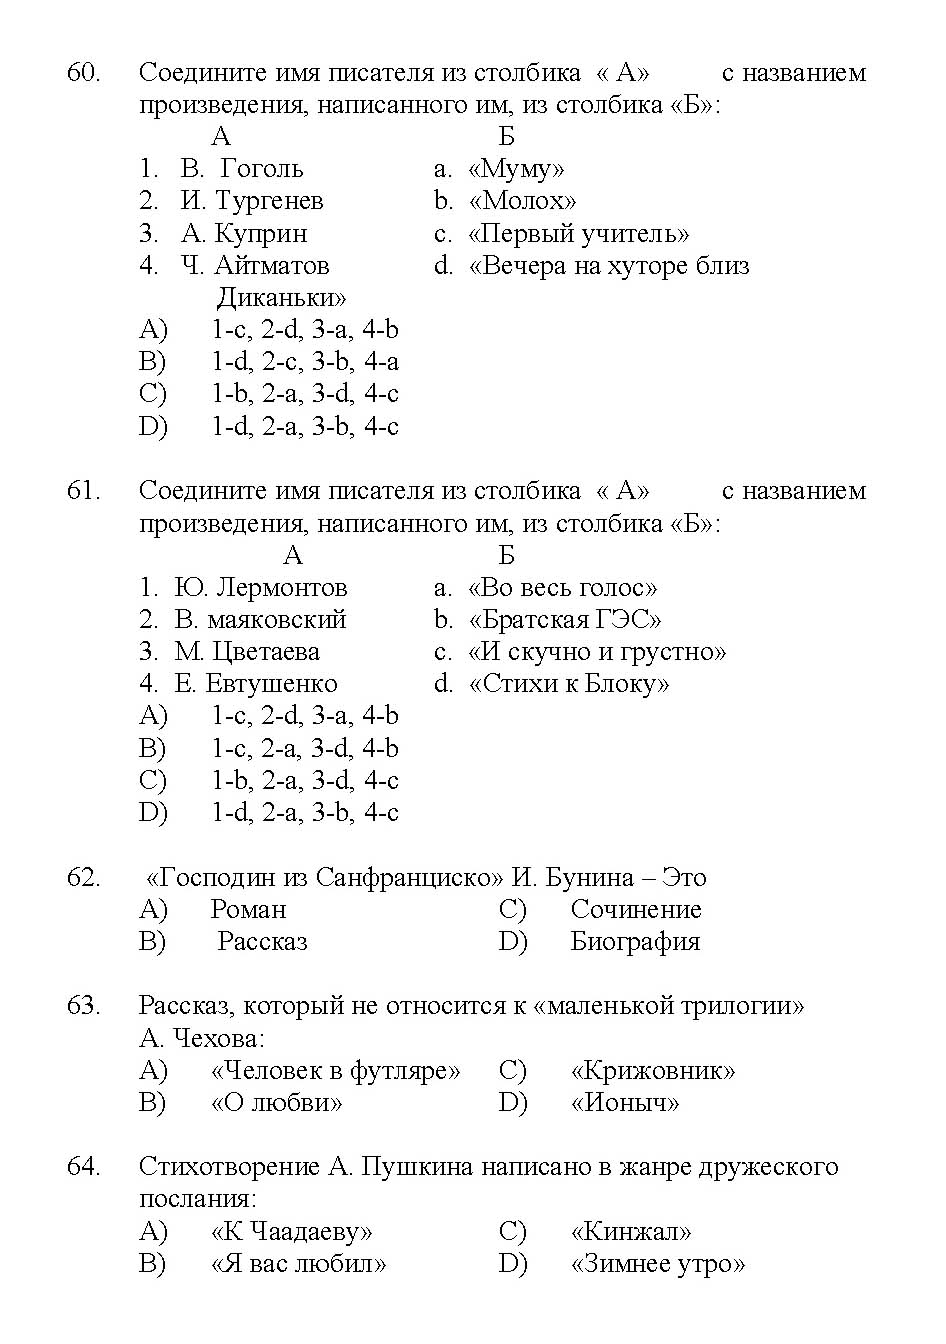 Kerala SET Russian Exam 2017 Question Code 17227 A 11